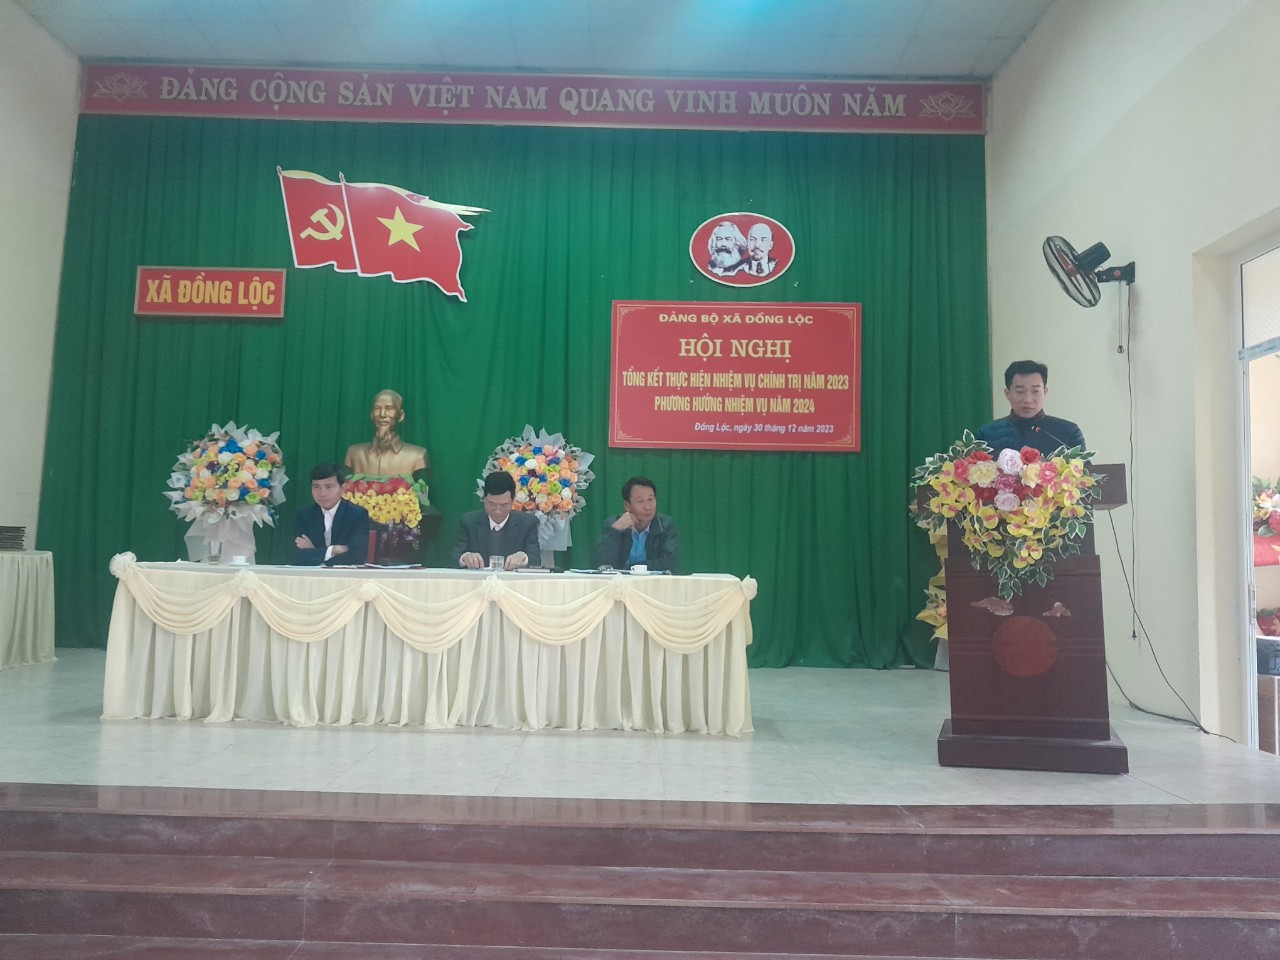 Đảng bộ xã Đồng Lộc Tổng kết công tác lãnh đạo, chỉ đạo năm 2023, phương hướng, nhiệm vụ năm 2024